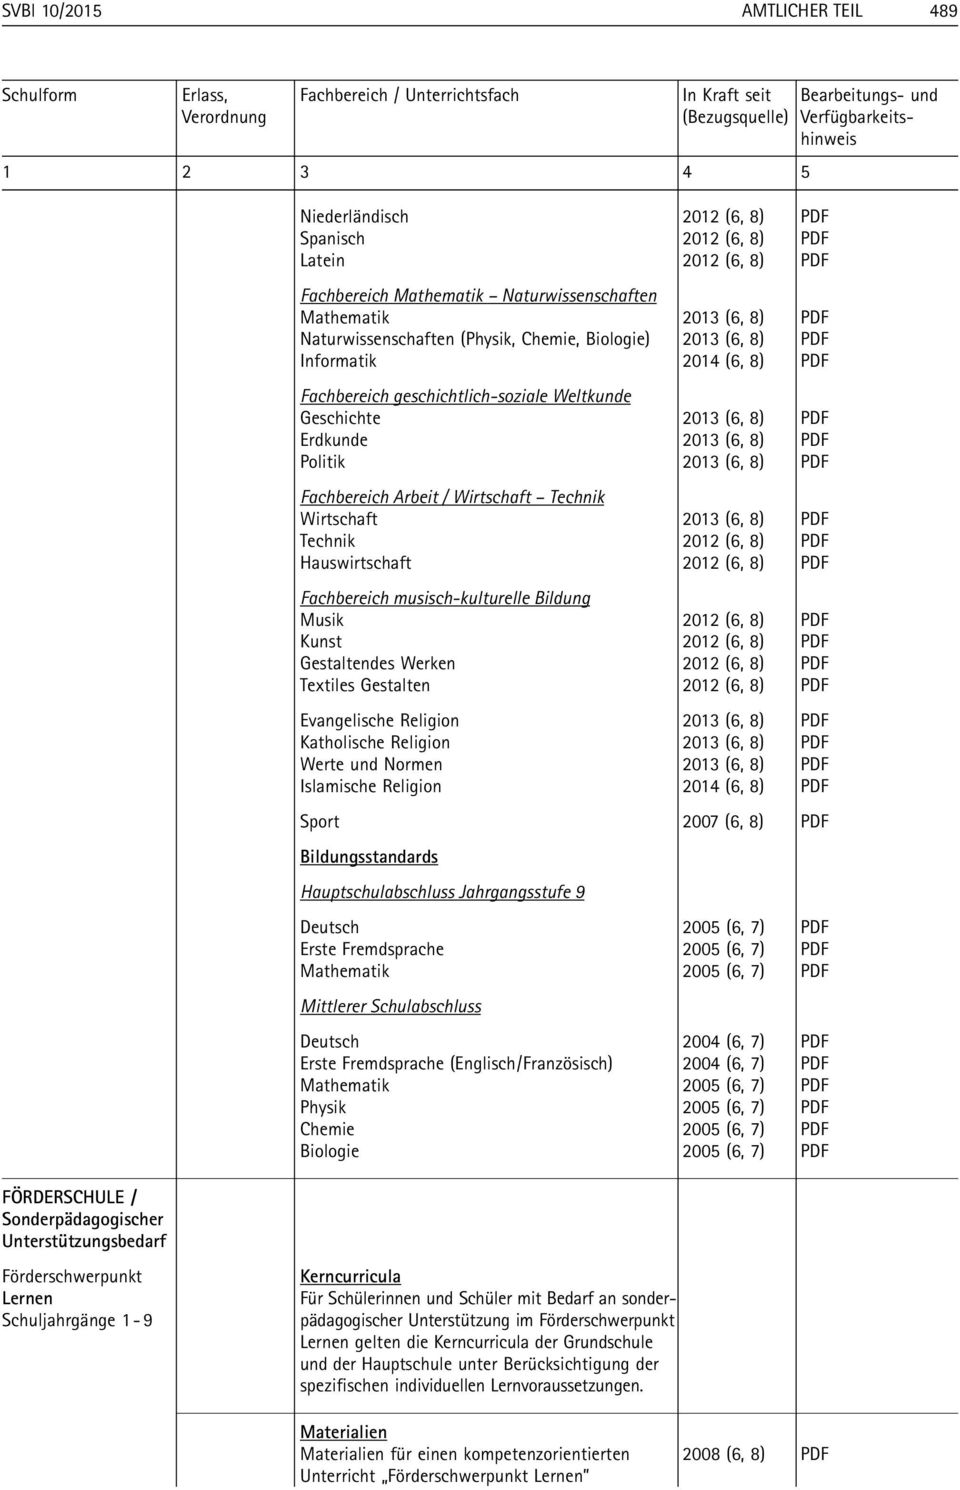 Naturwissenschaften (Physik, Chemie, Biologie) 2013 (6, 8) PDF Informatik 2014 (6, 8) PDF Fachbereich geschichtlich-soziale Weltkunde Geschichte 2013 (6, 8) PDF Erdkunde 2013 (6, 8) PDF Politik 2013